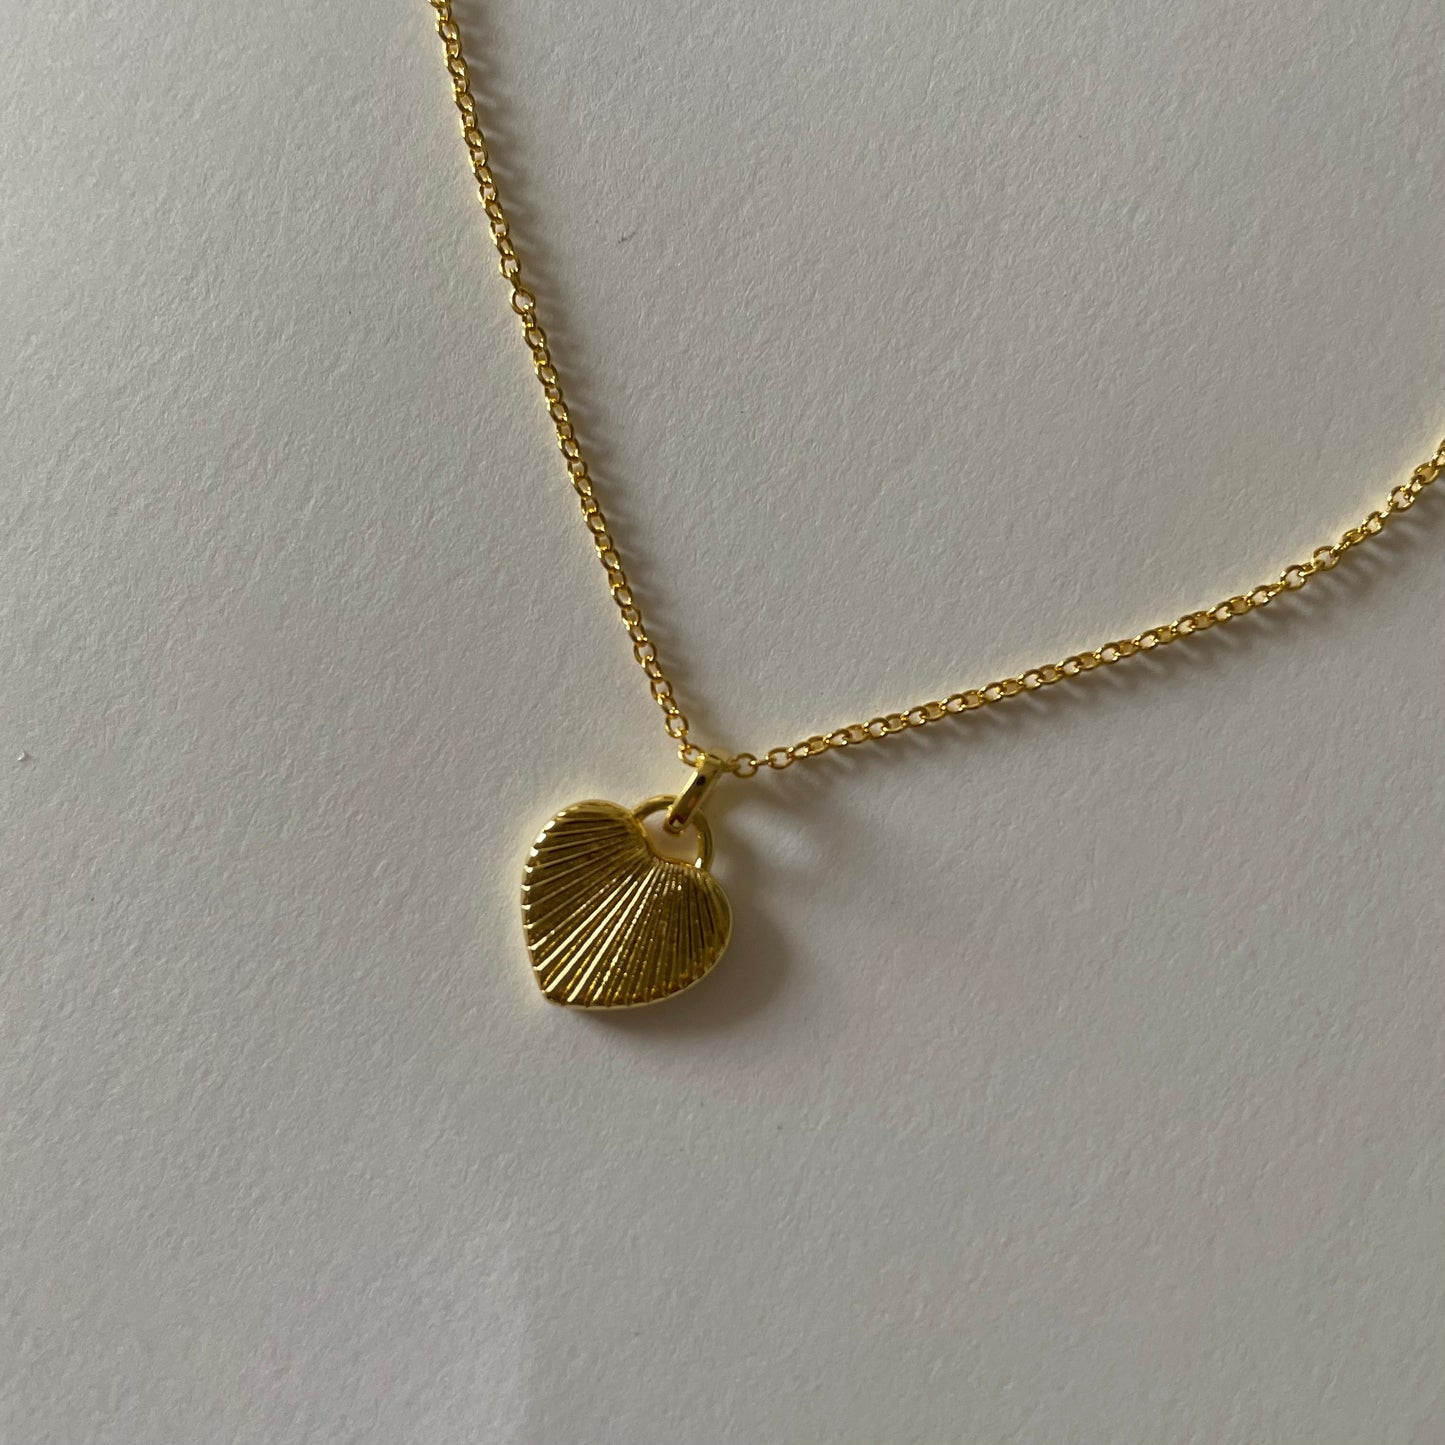 Sunshine Heart Necklace - Namaste Jewelry Canada